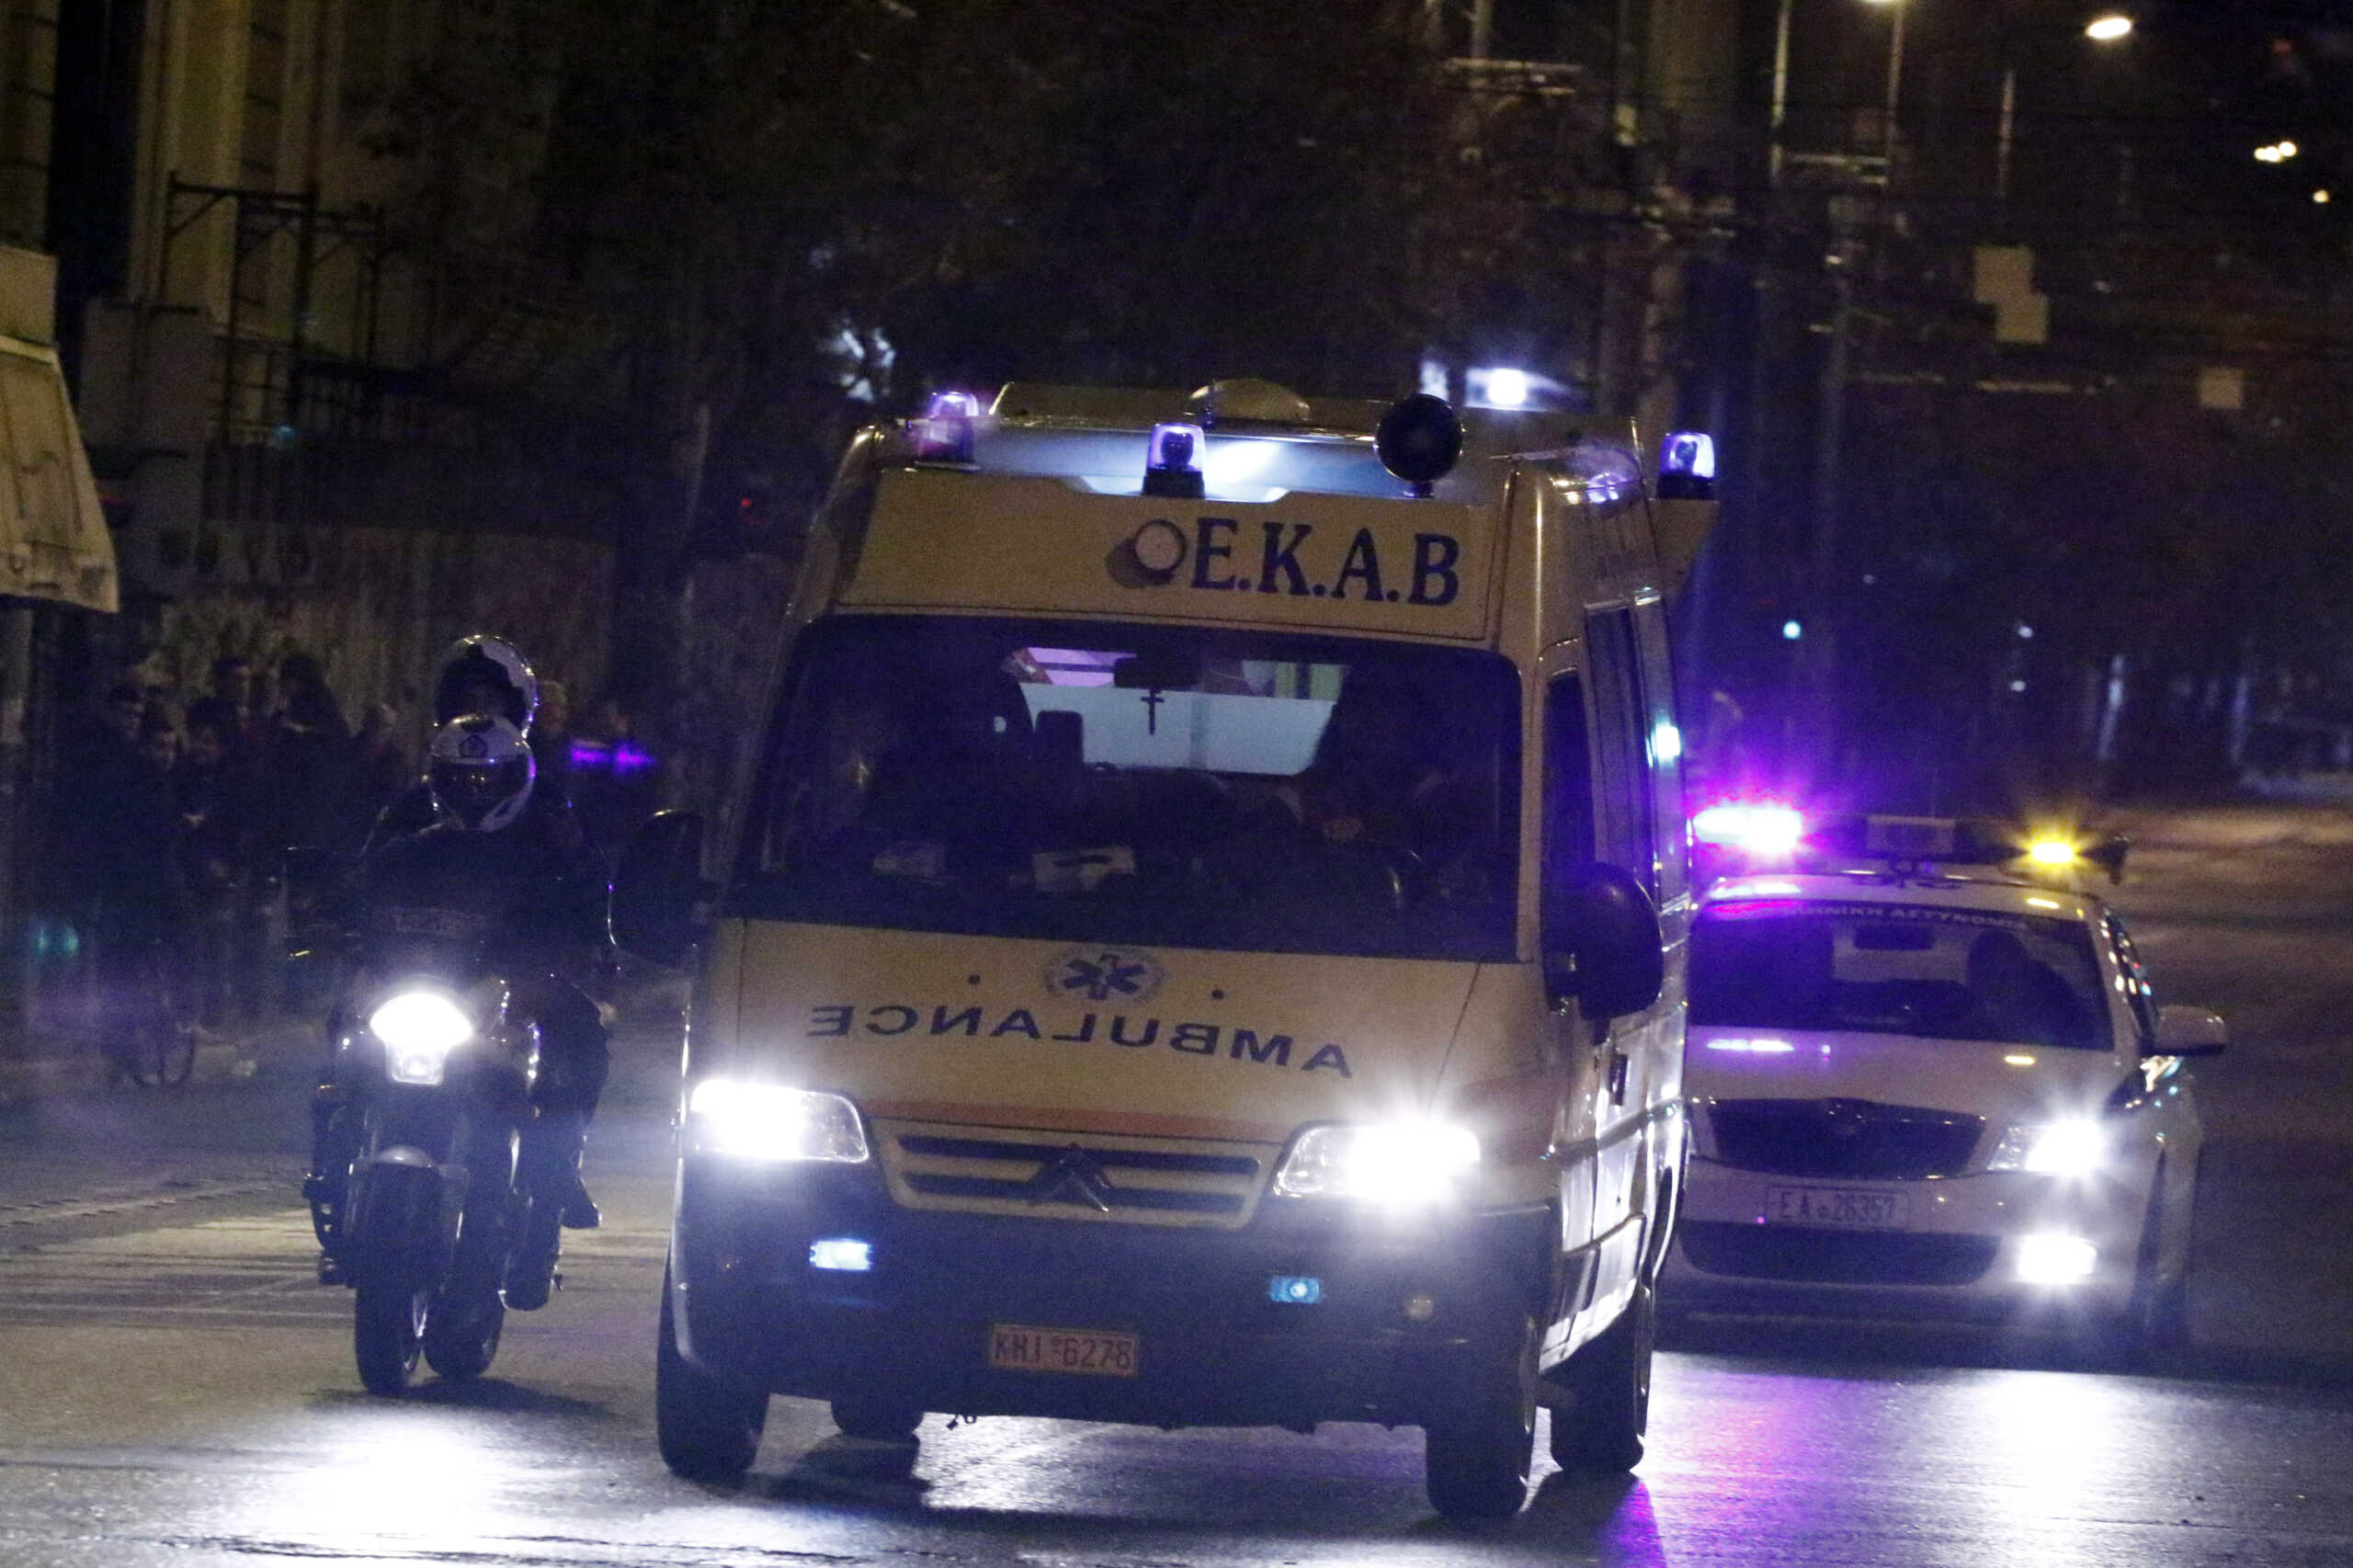 Θεσσαλονίκη: Καραμπόλα 6 οχημάτων και 2 ανατροπές αυτοκινήτων το βράδυ του Σαββάτου